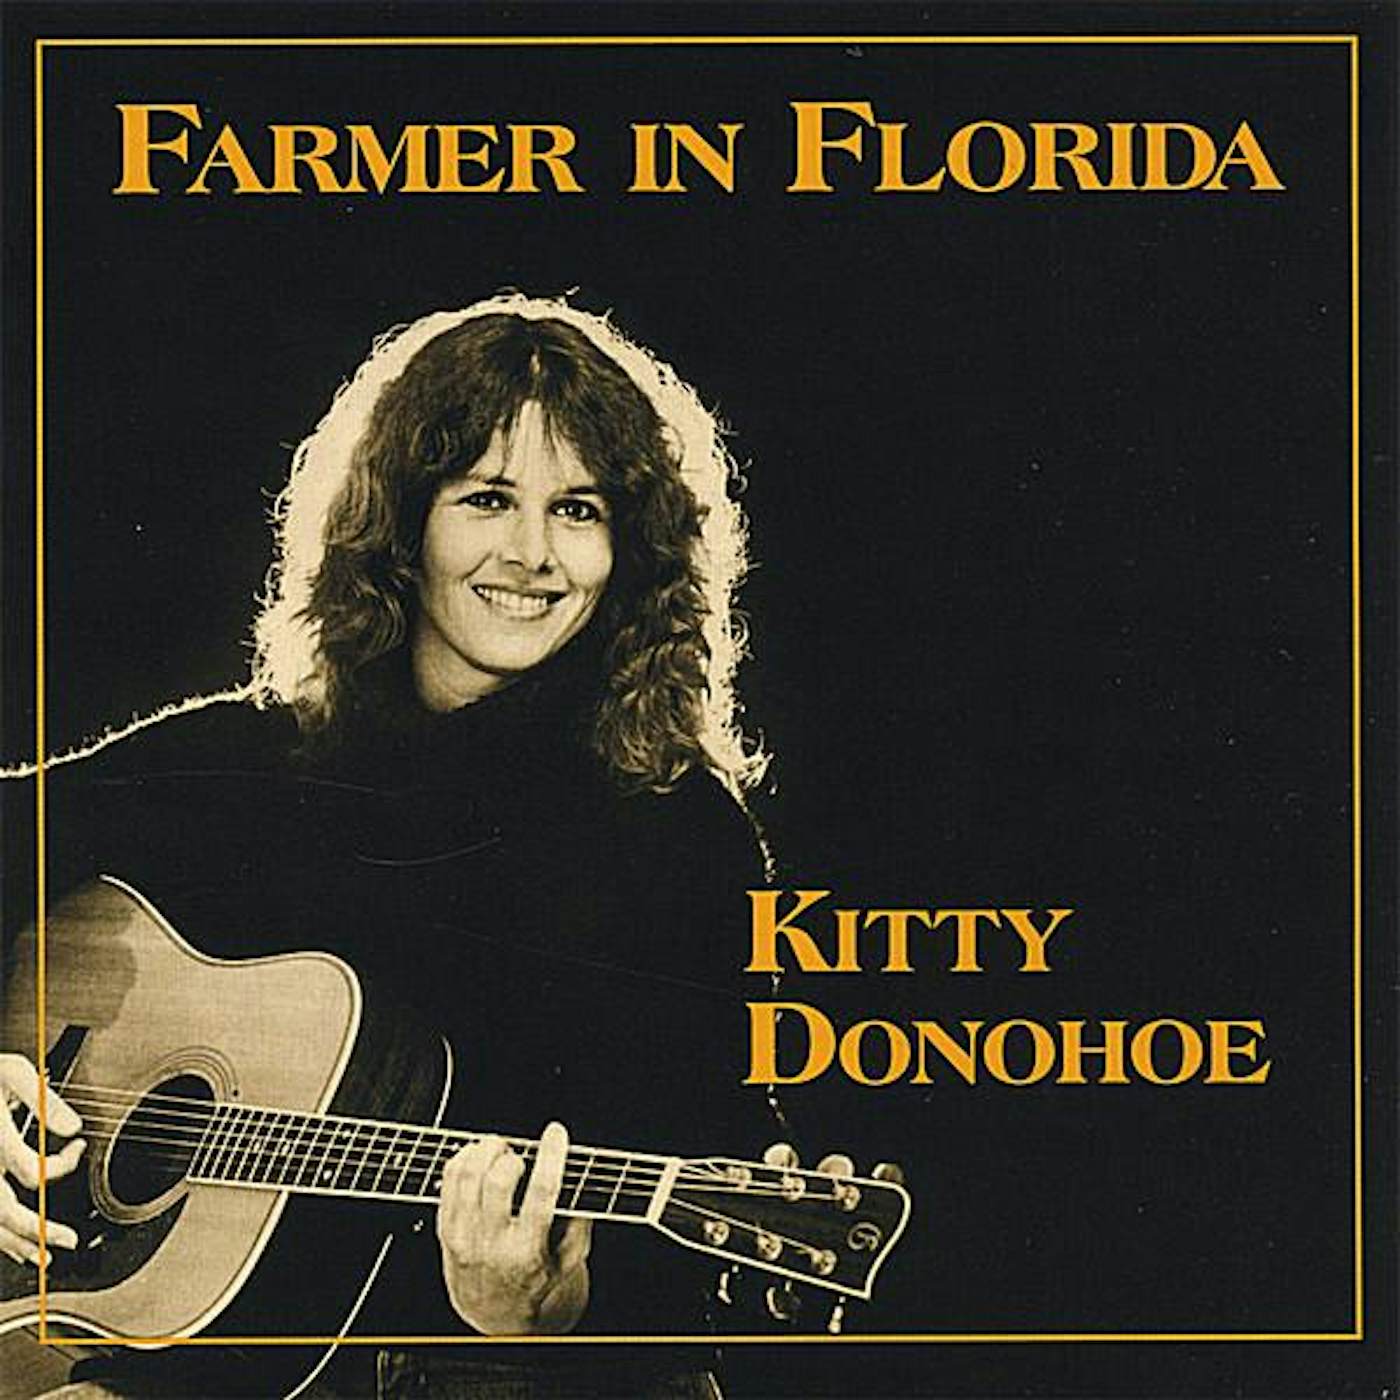 Kitty Donohoe FARMER IN FLORIDA CD